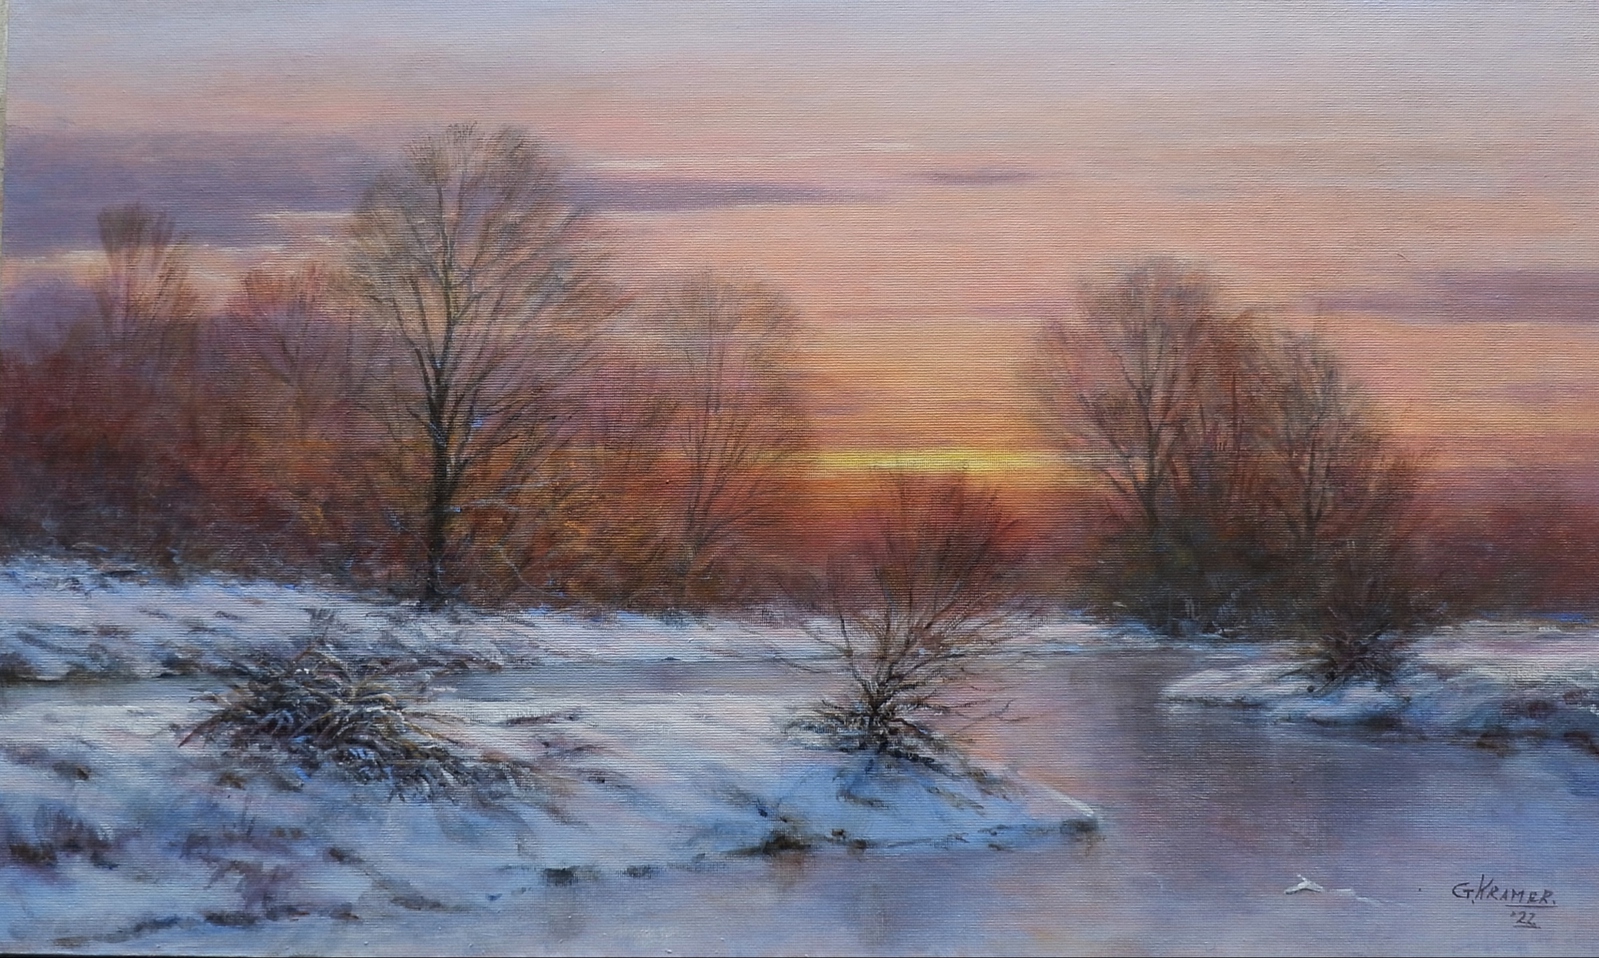 Winterlandschap - Last light